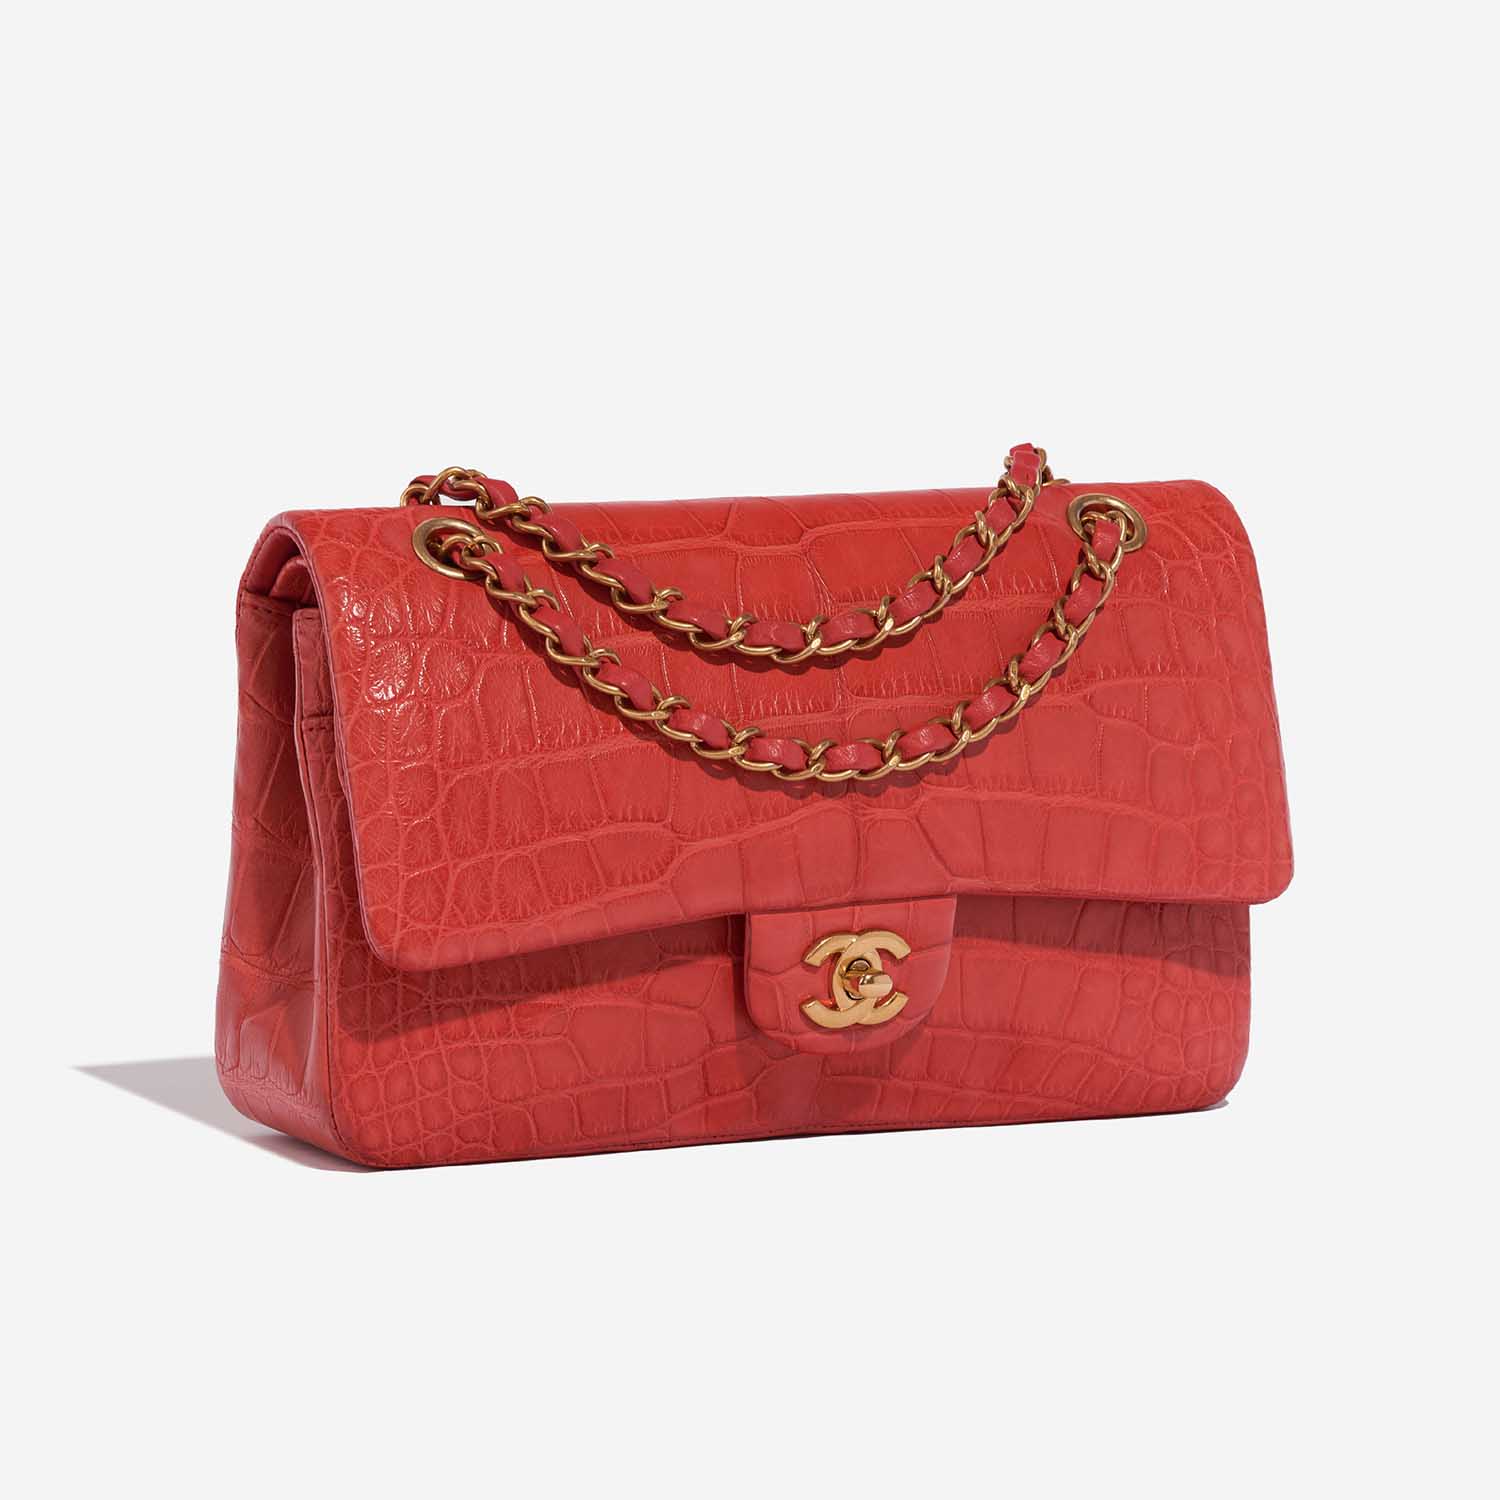 Chanel Timeless Medium Rot 6SF S | Verkaufen Sie Ihre Designer-Tasche auf Saclab.com